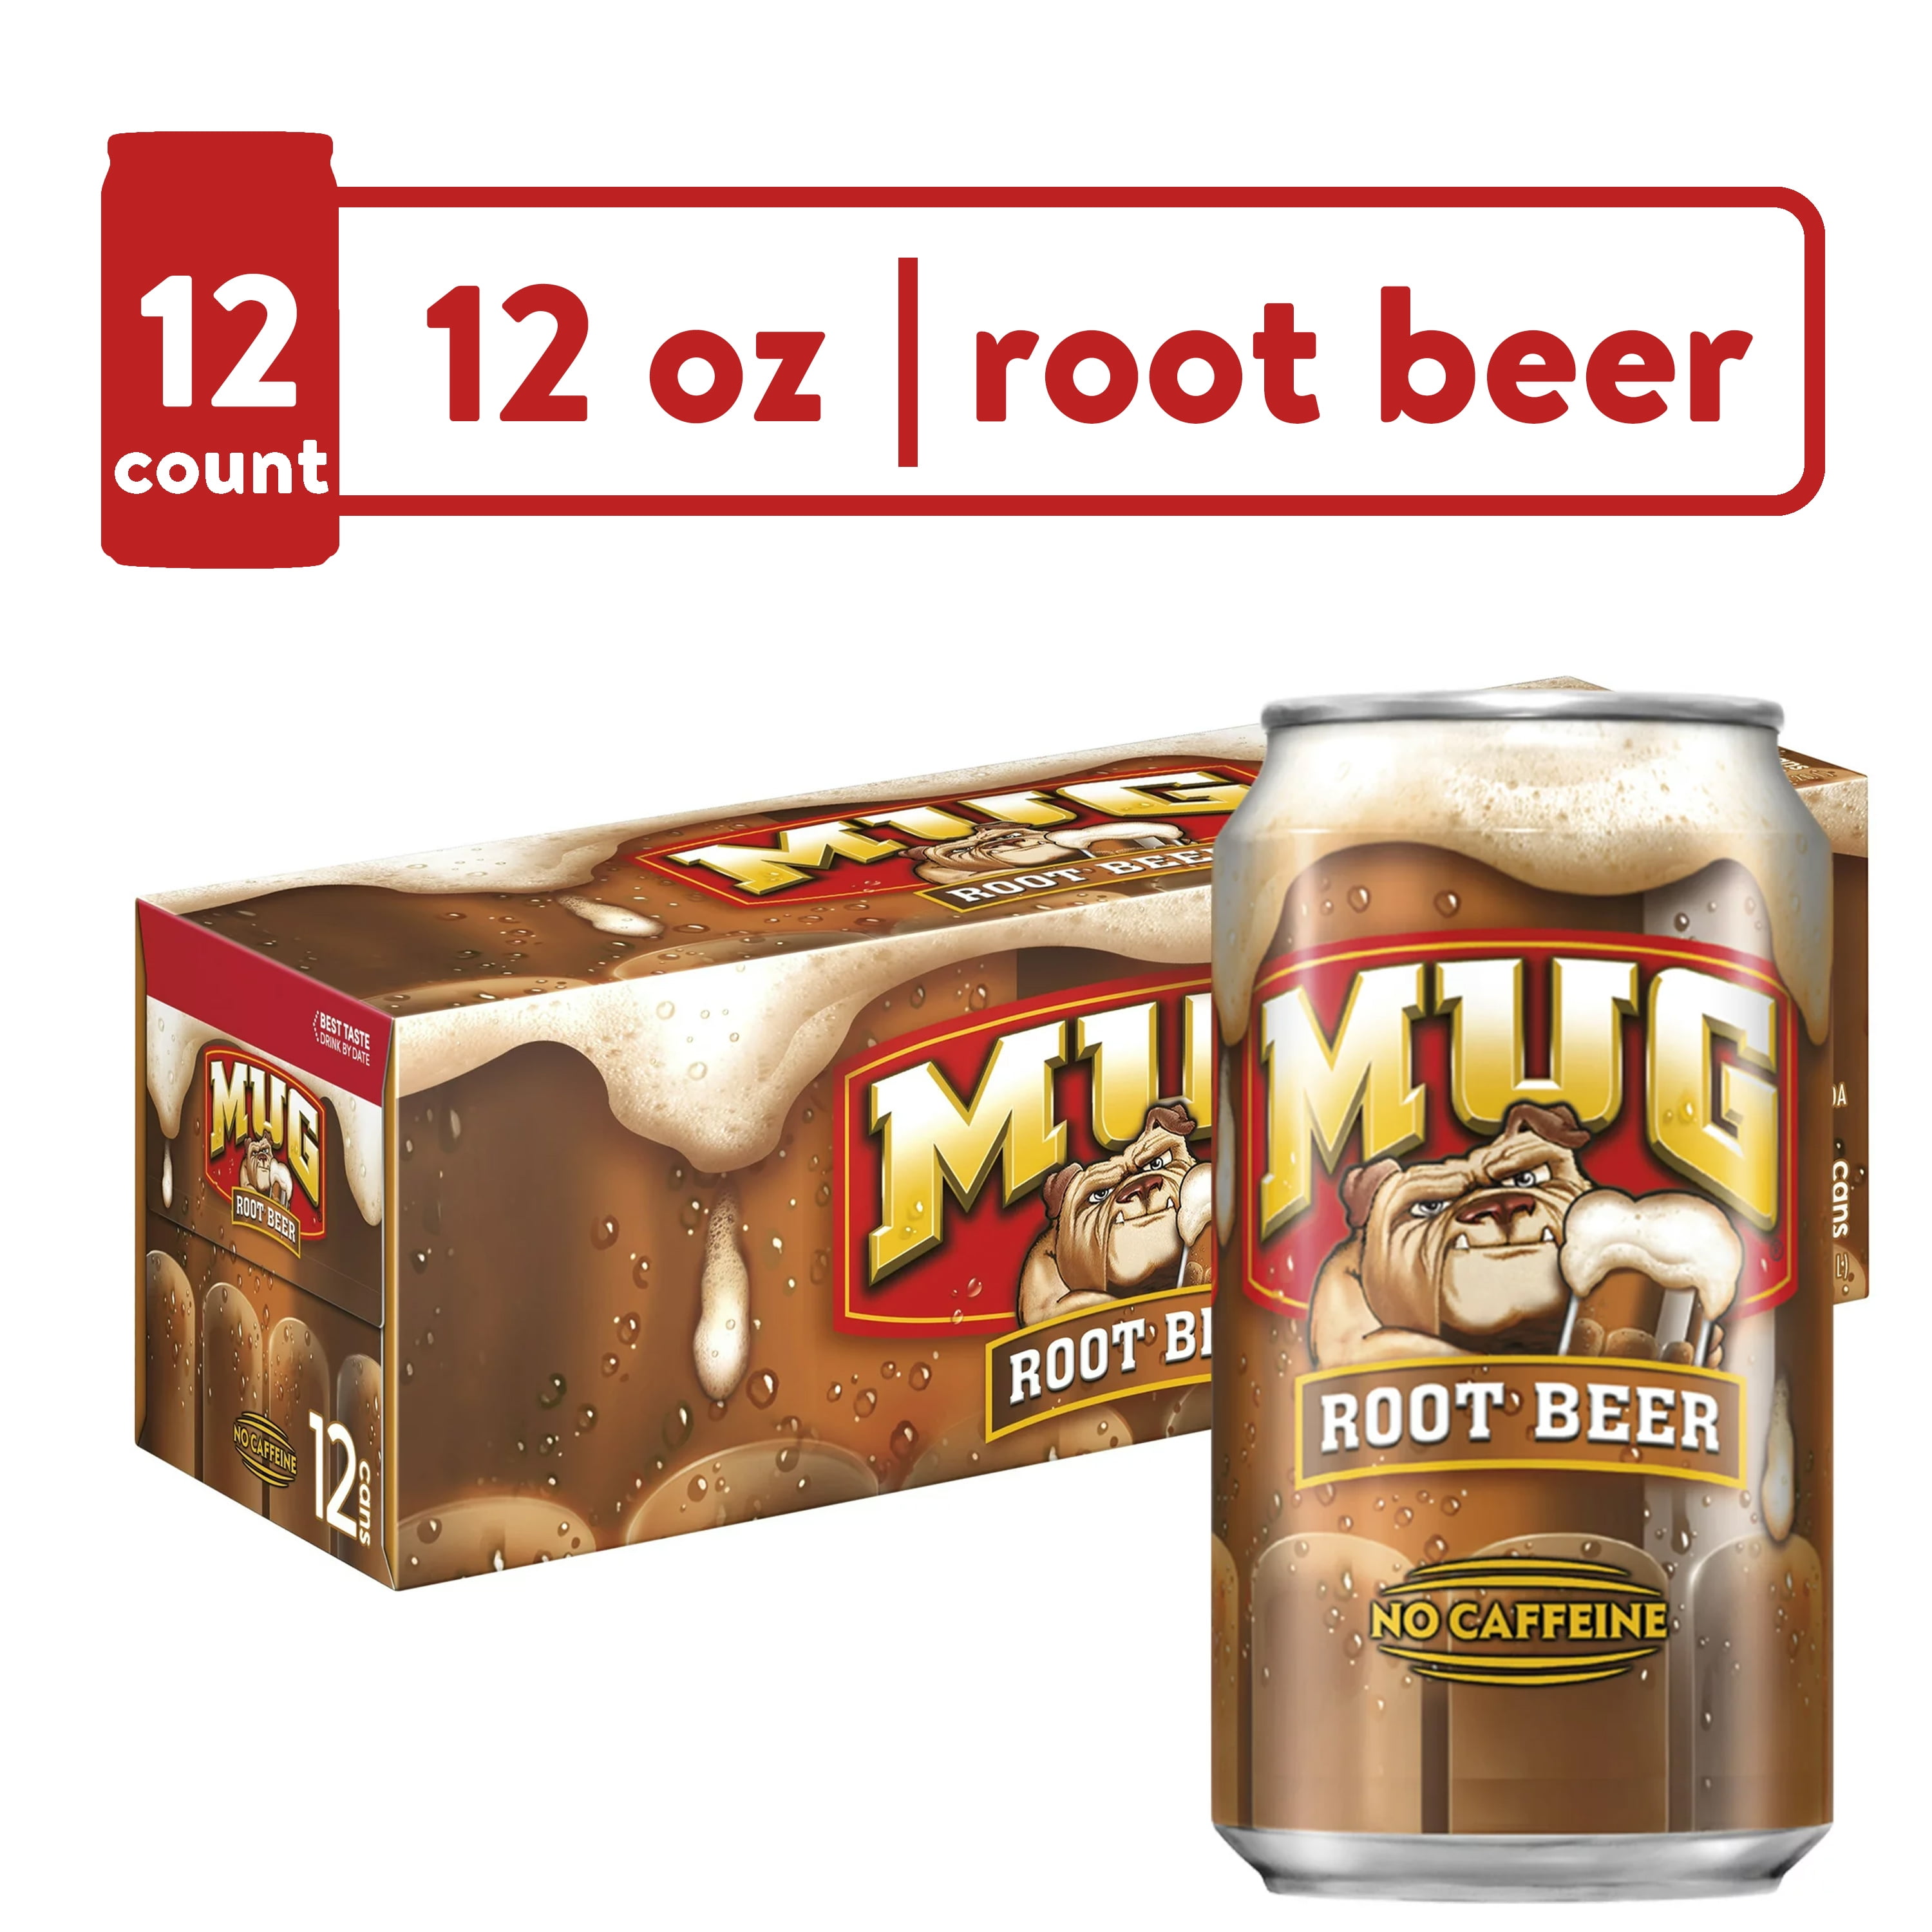 A&W Root Beer Soda Pop, 2 L, Bottle